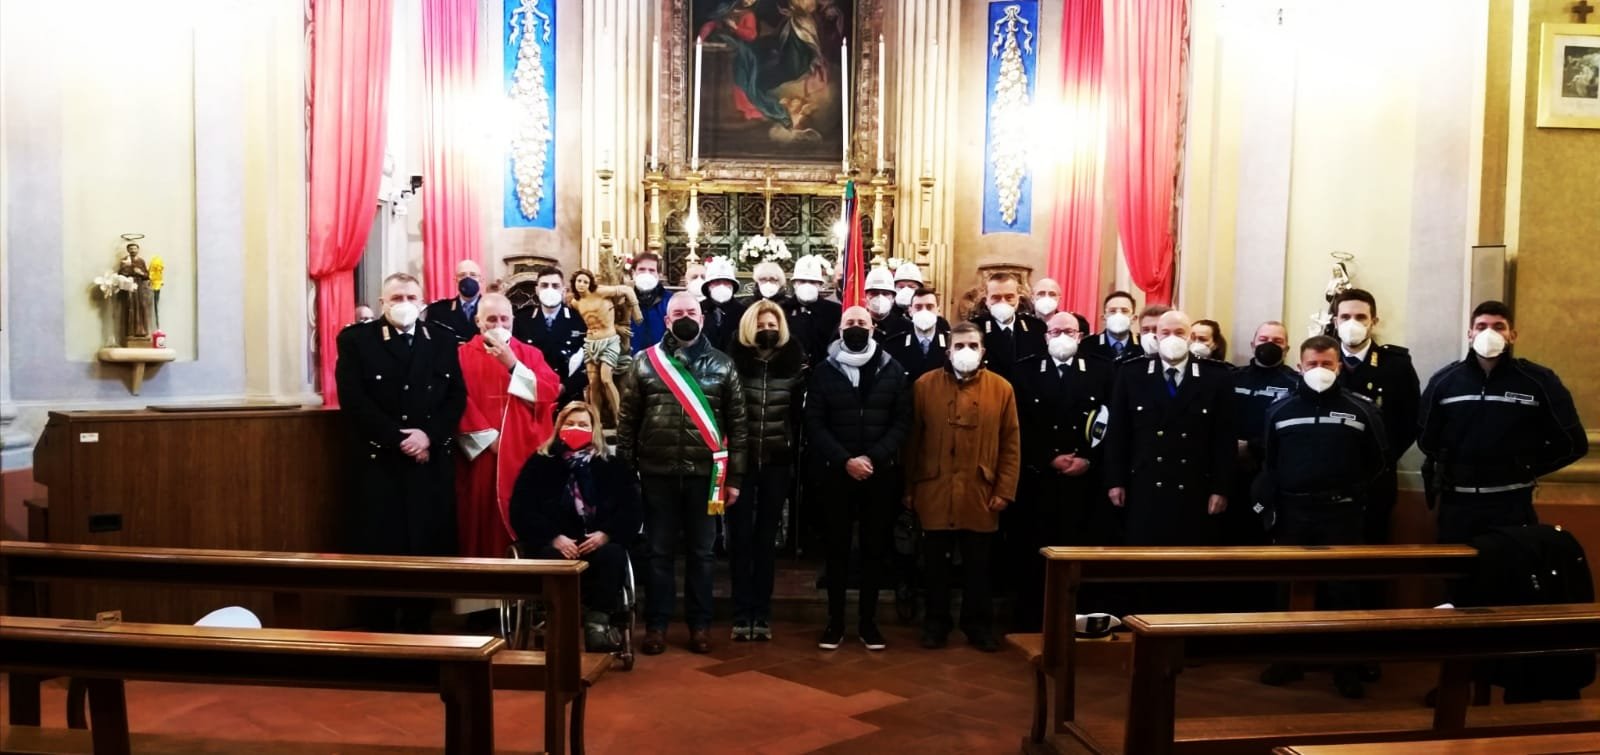 La Polizia Locale di Valenza ha festeggiato il patrono San Sebastiano